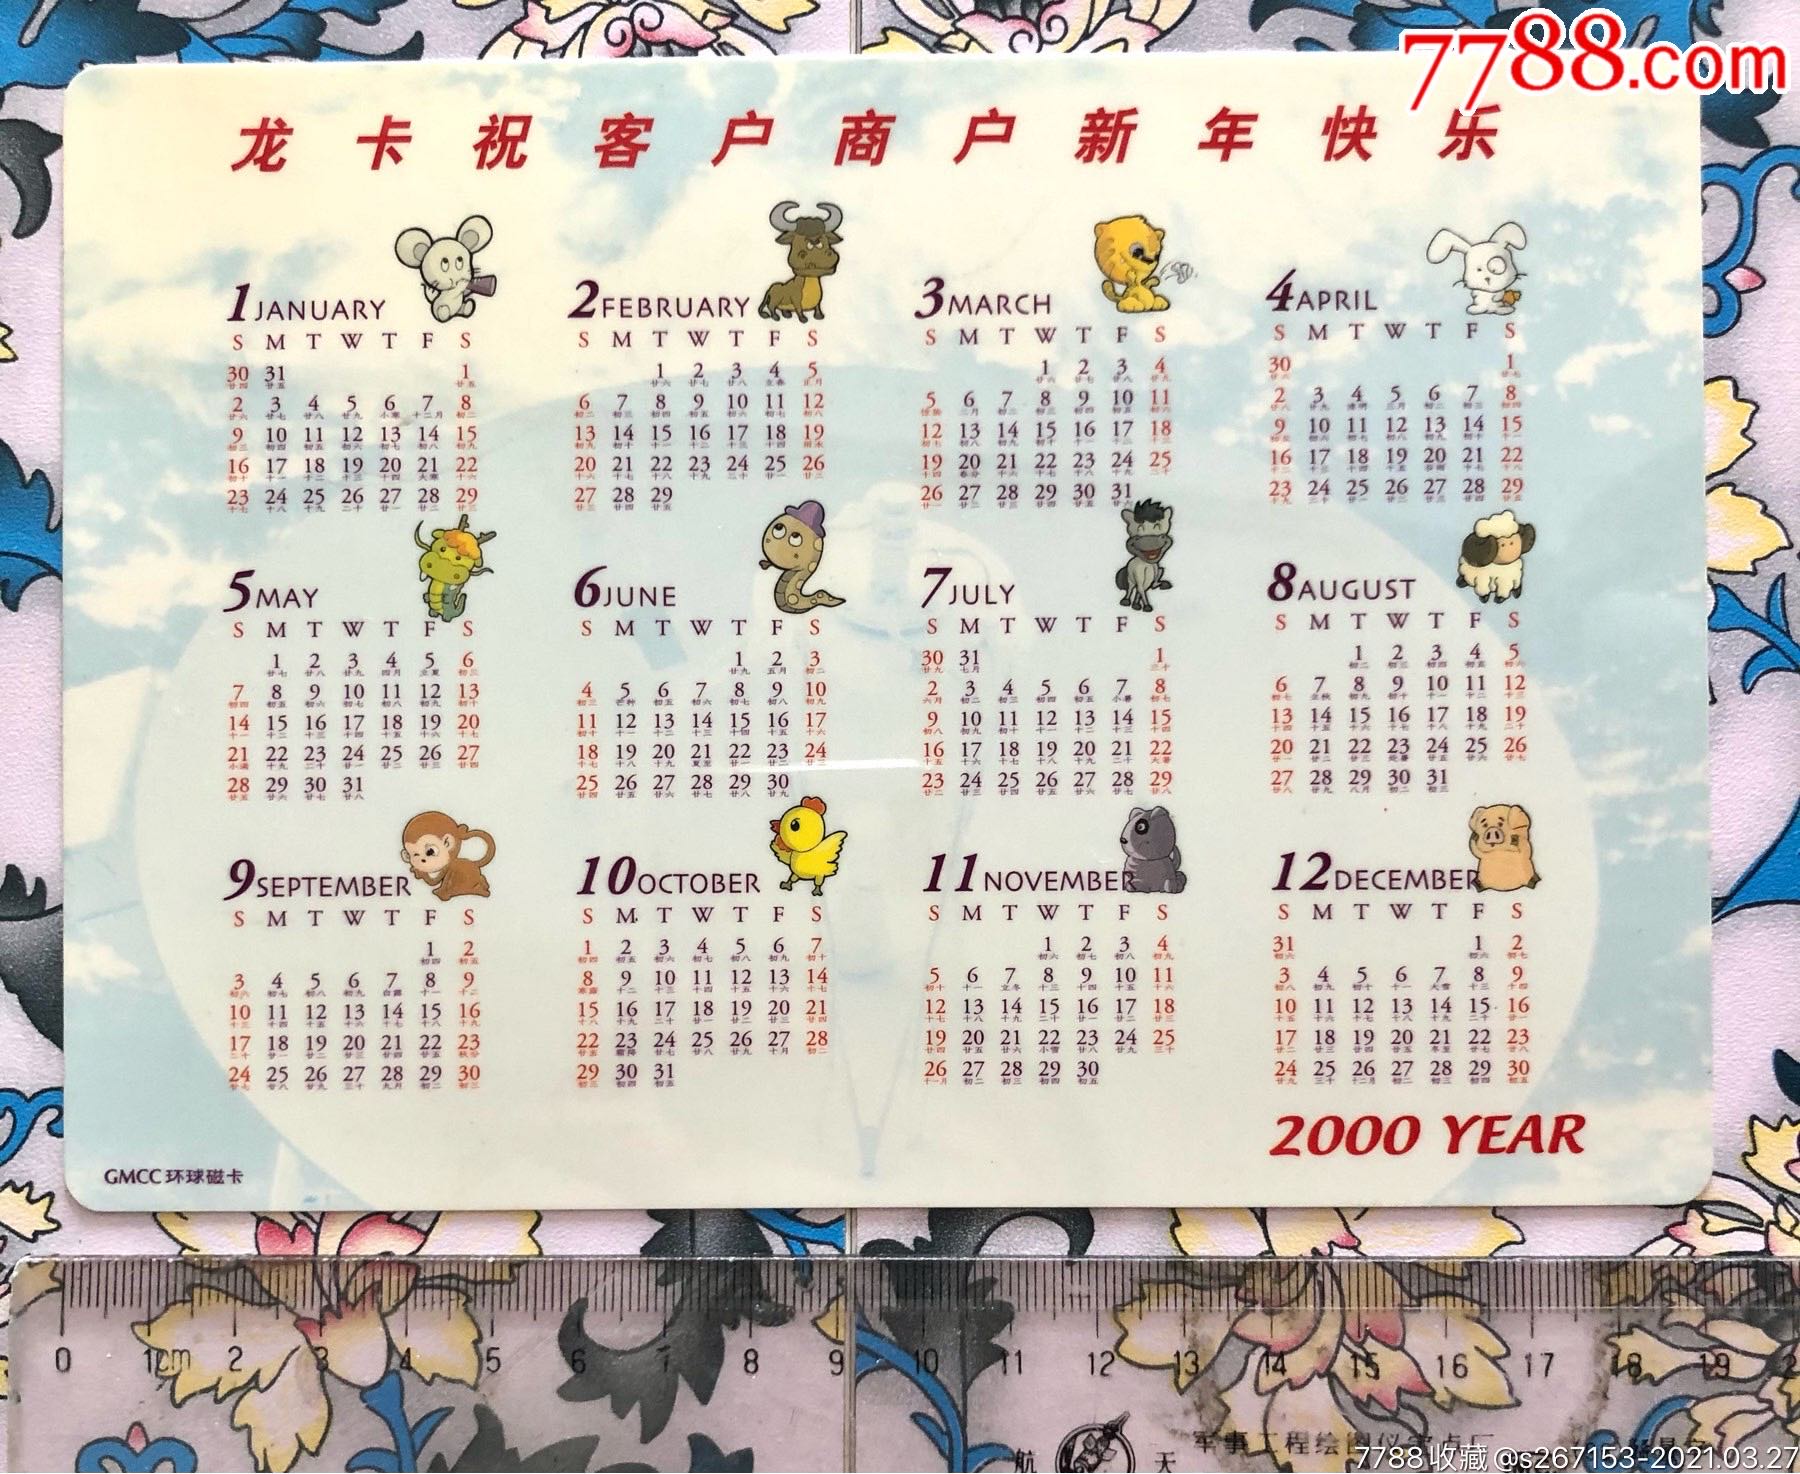 2000年全年日历图片图片